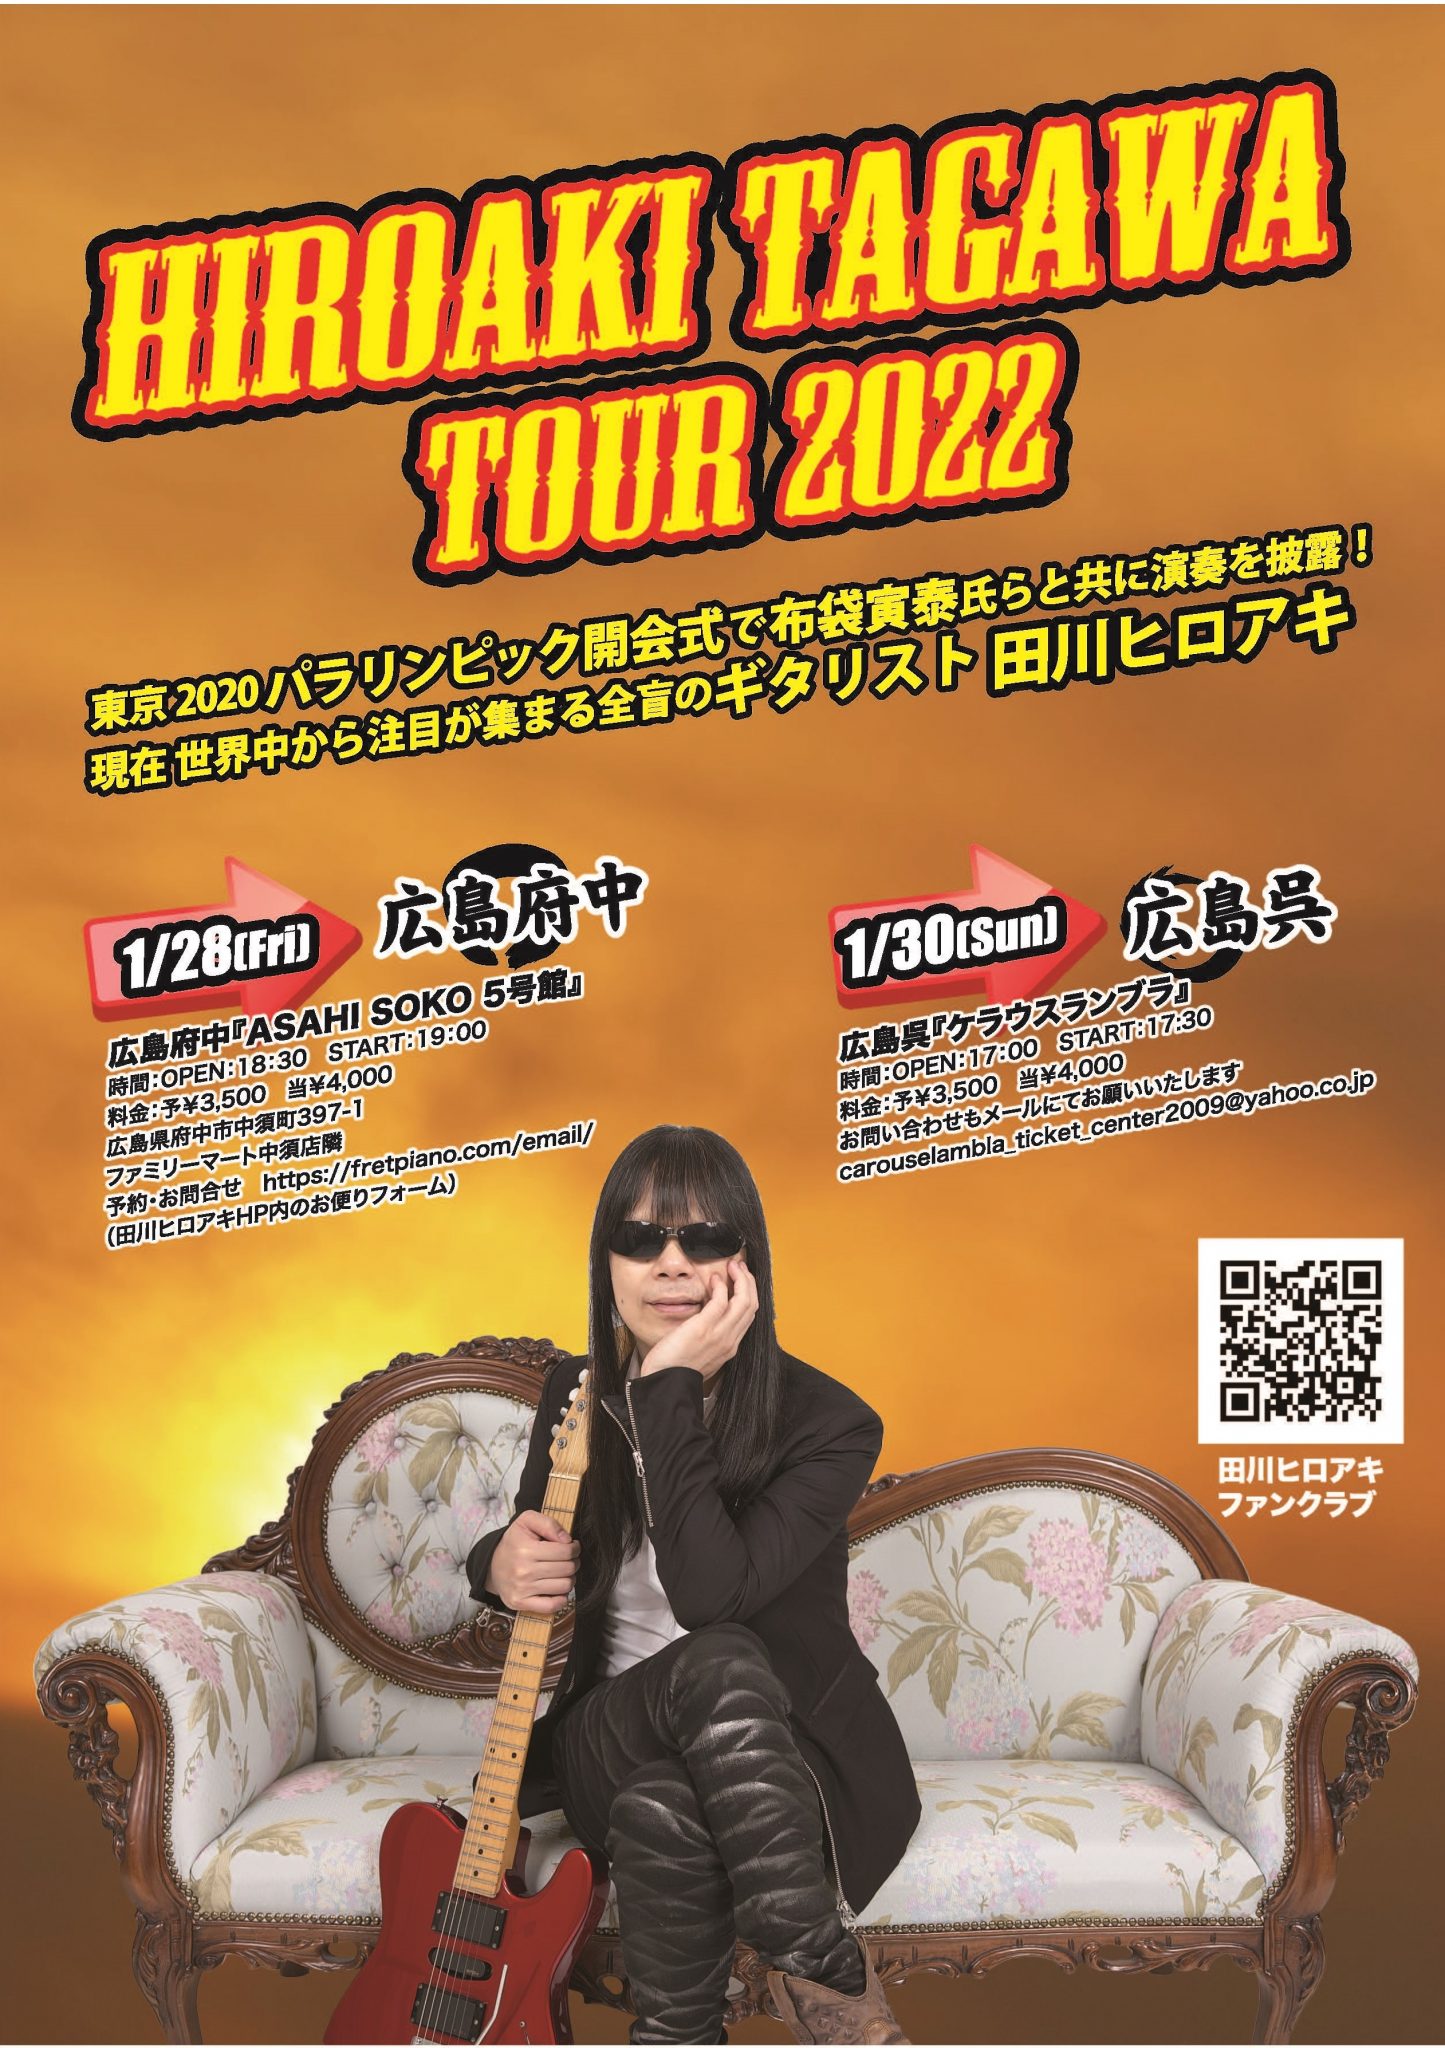 HIROAKI TAGAWA TOUR 2022